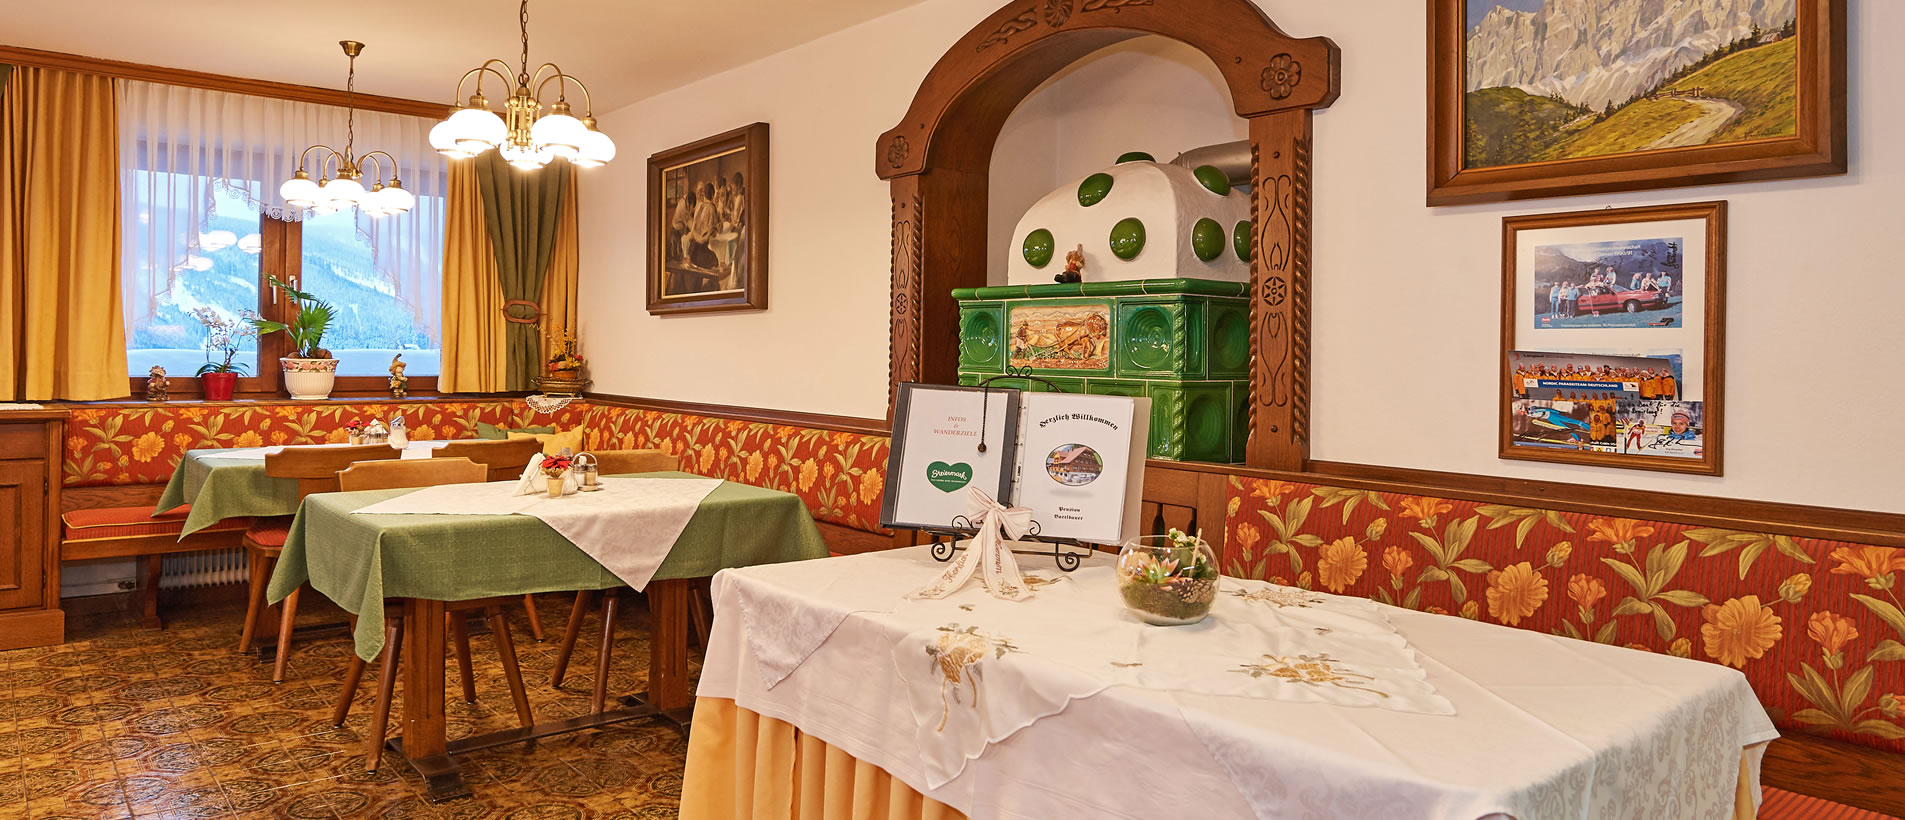 Restaurant und Gaststube in der Pension Bartlbauer in Ramsau am Dachstein